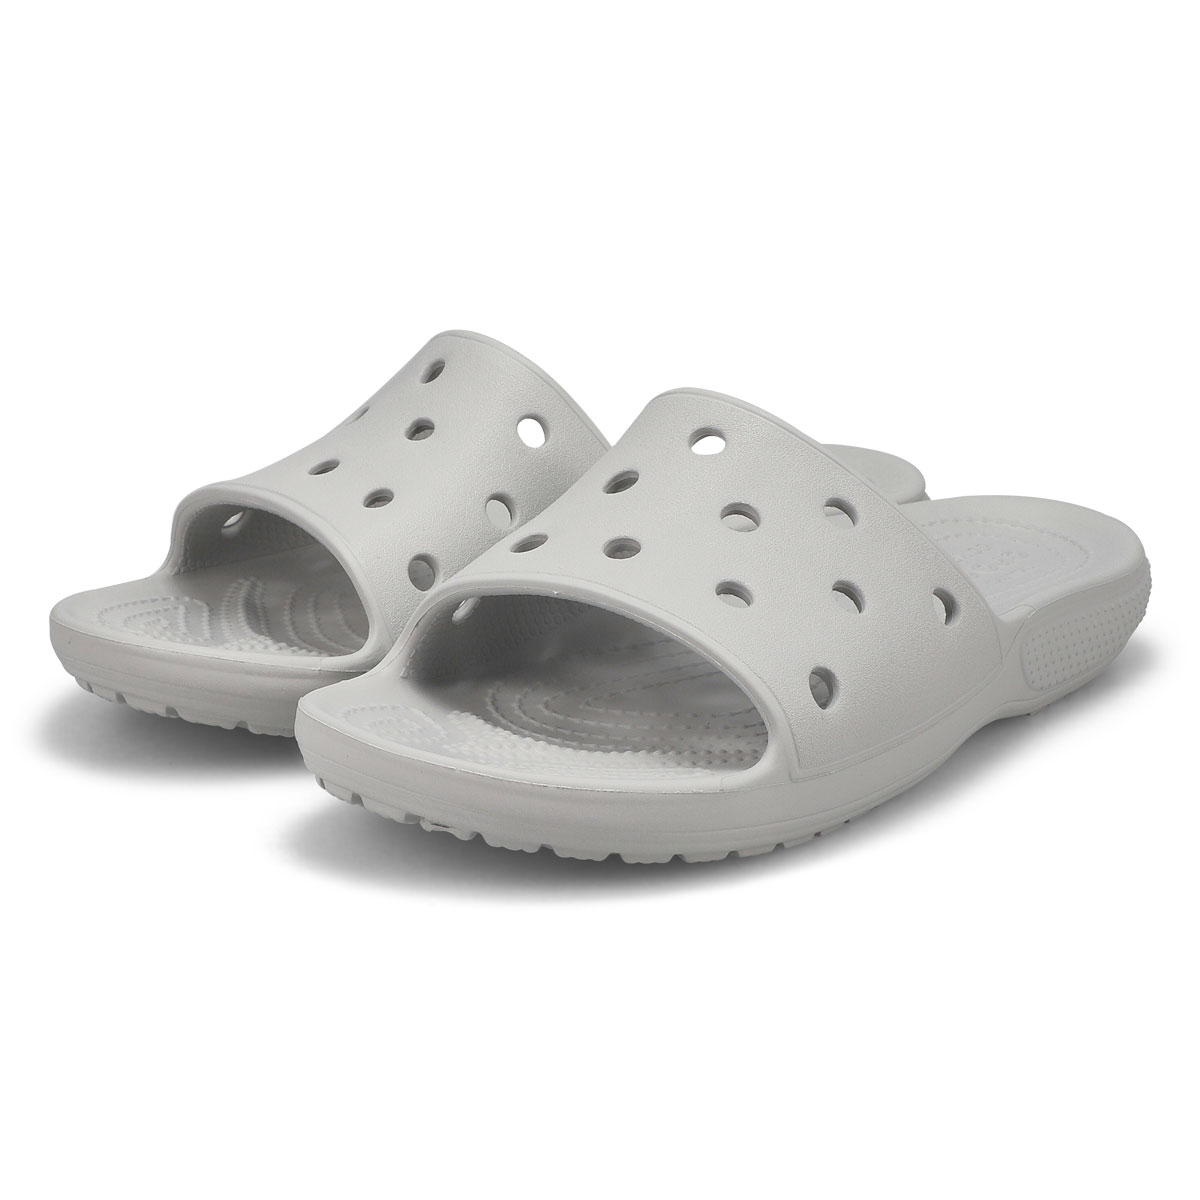 Crocs Women's Classic Crocs Slide Sandal | SoftMoc.com